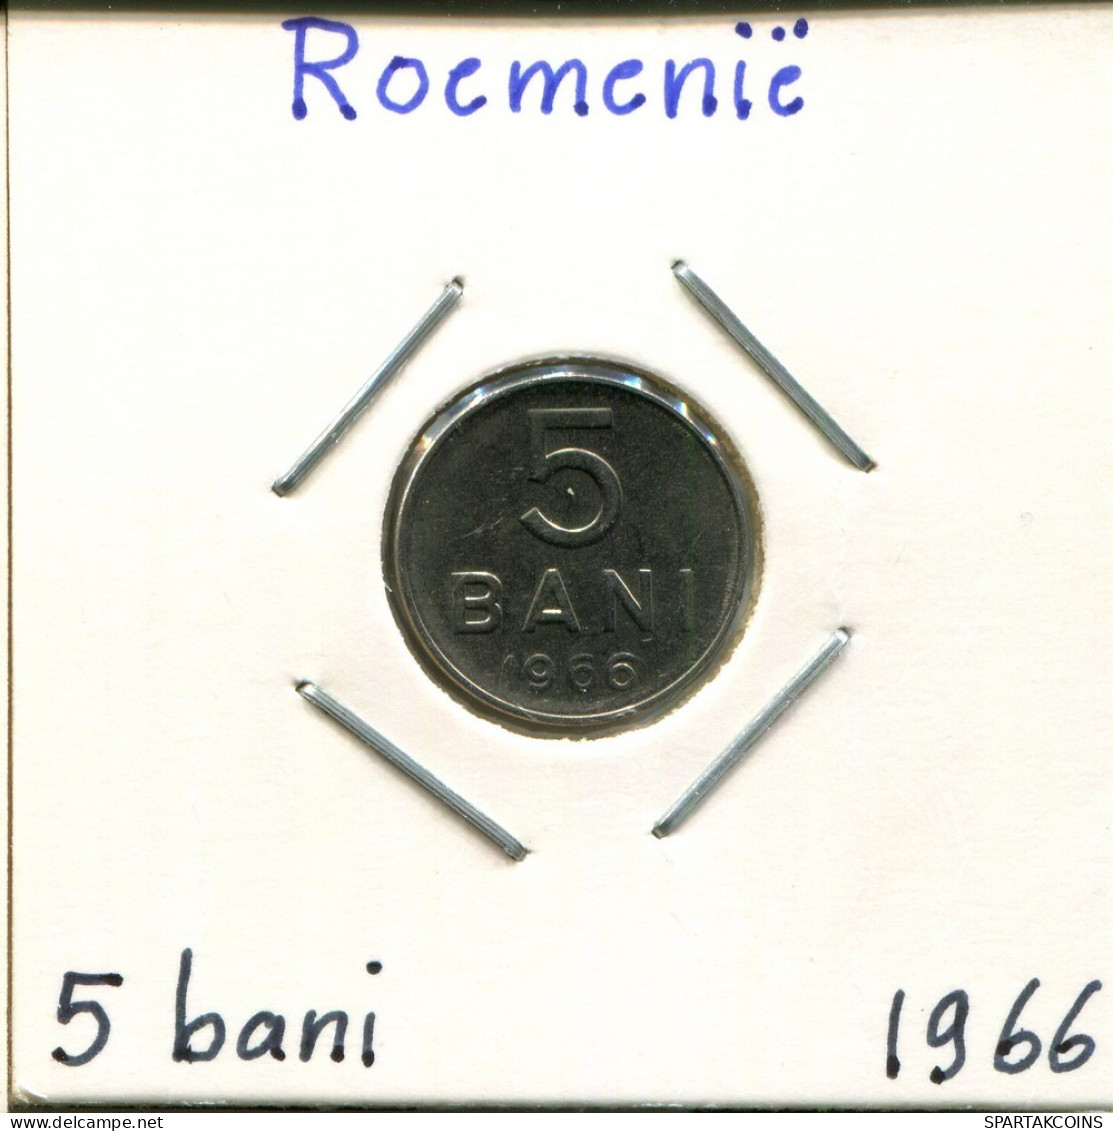 5 BANI 1966 ROMANIA Coin #AP633.2.U.A - Roumanie